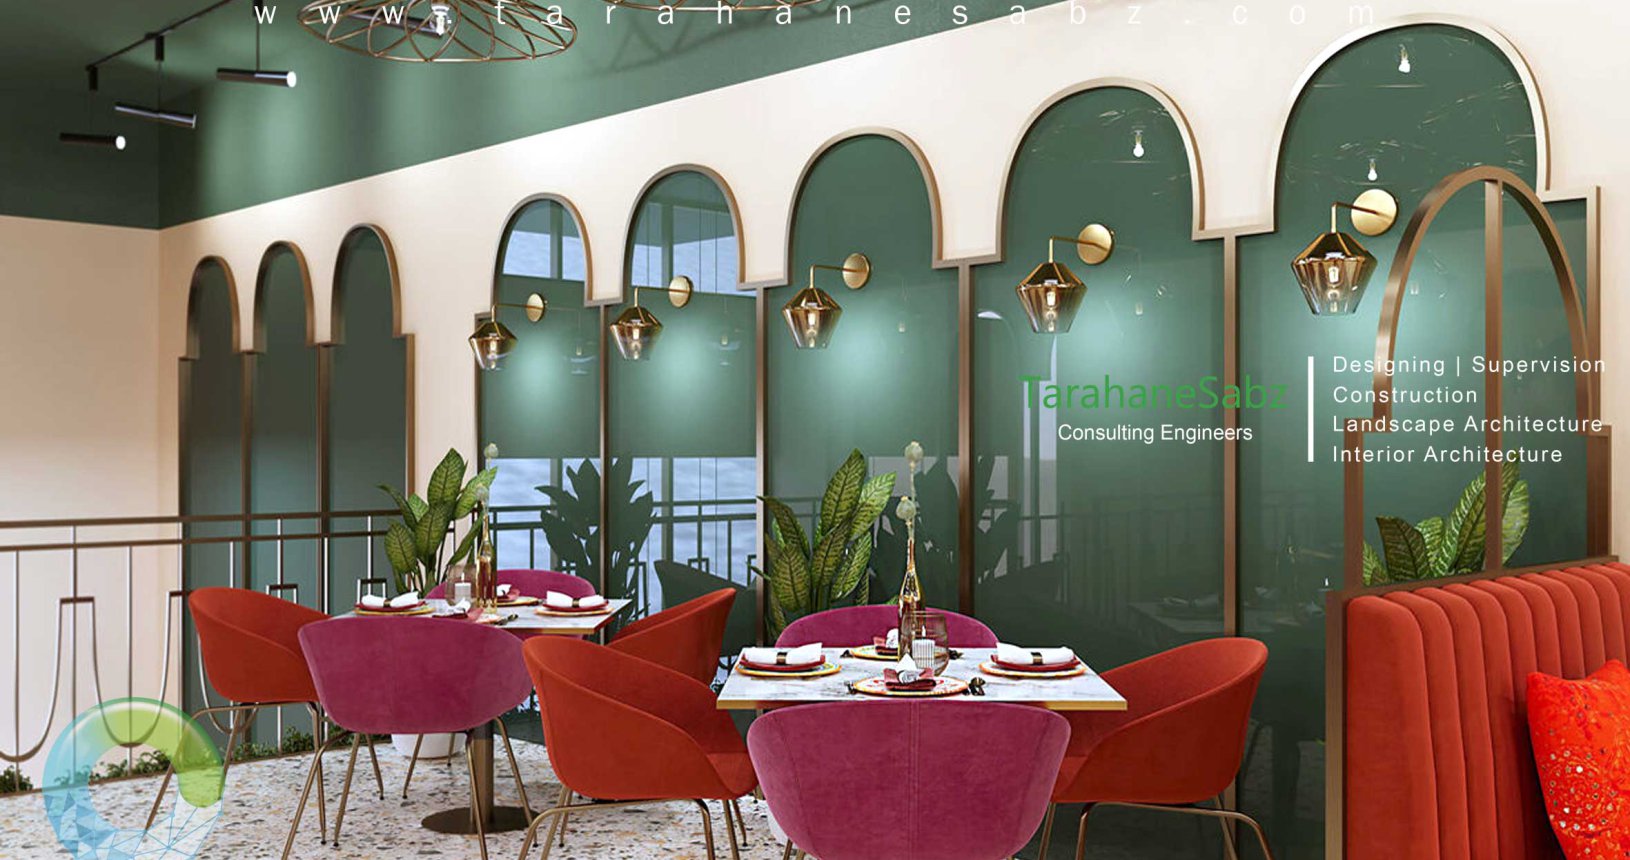 طراحی داخلی رستوران با دیوارهای سبز و مبلمان قرمز | طراحان سبز